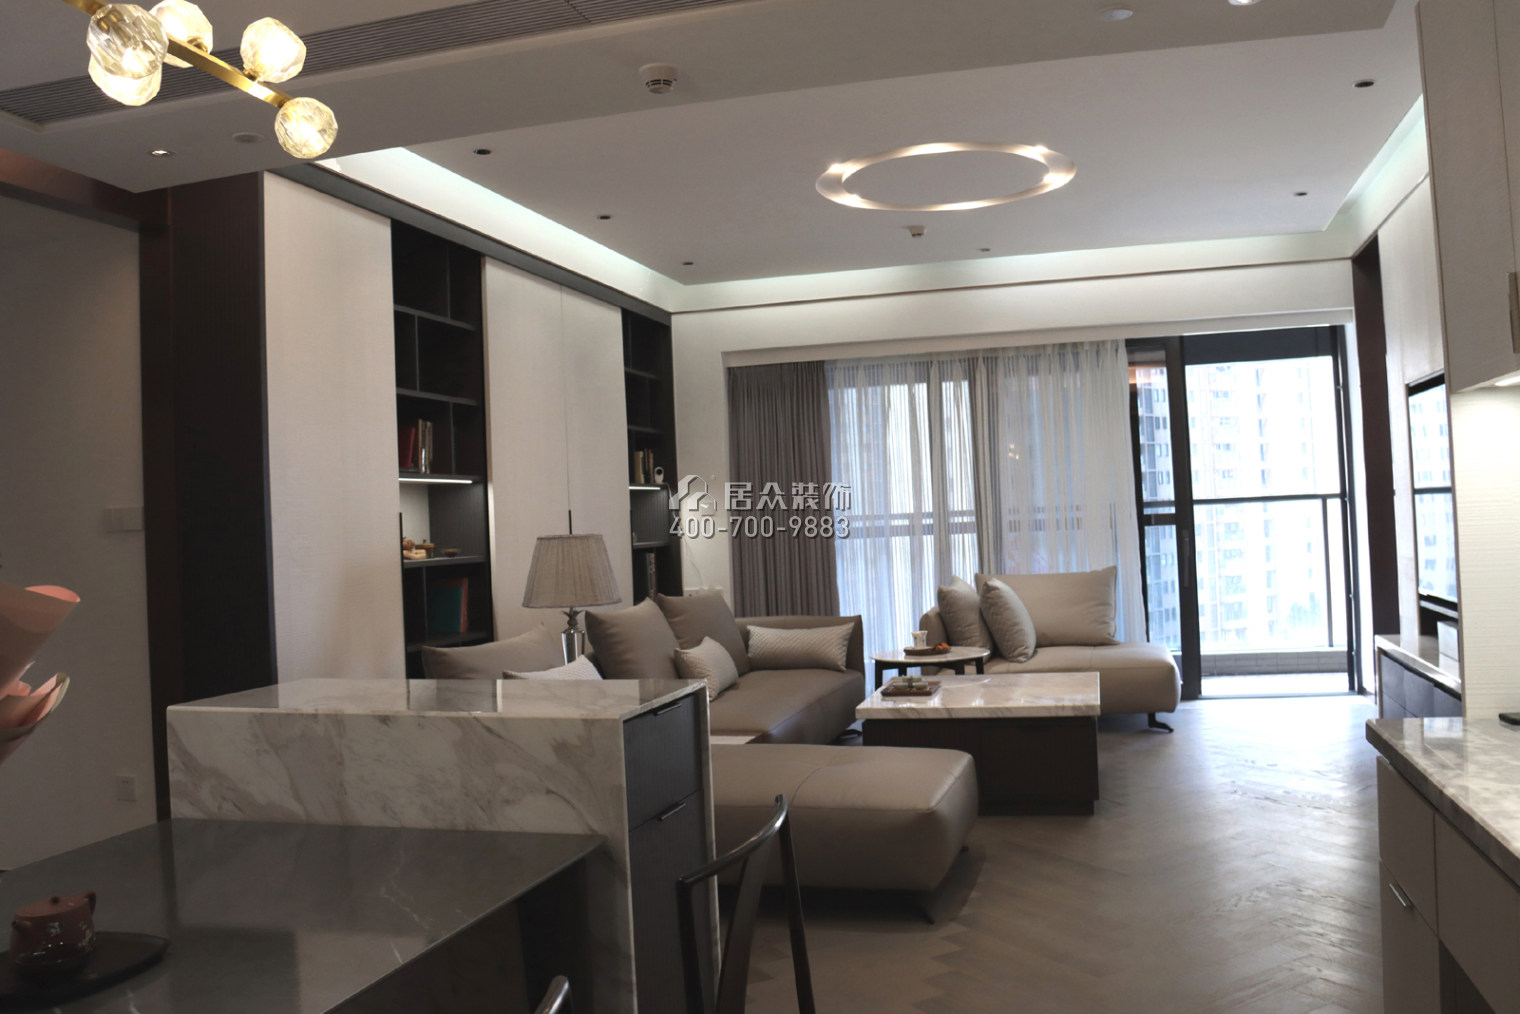 華潤城潤府二期206平方米現代簡約風格平層戶型客廳裝修效果圖